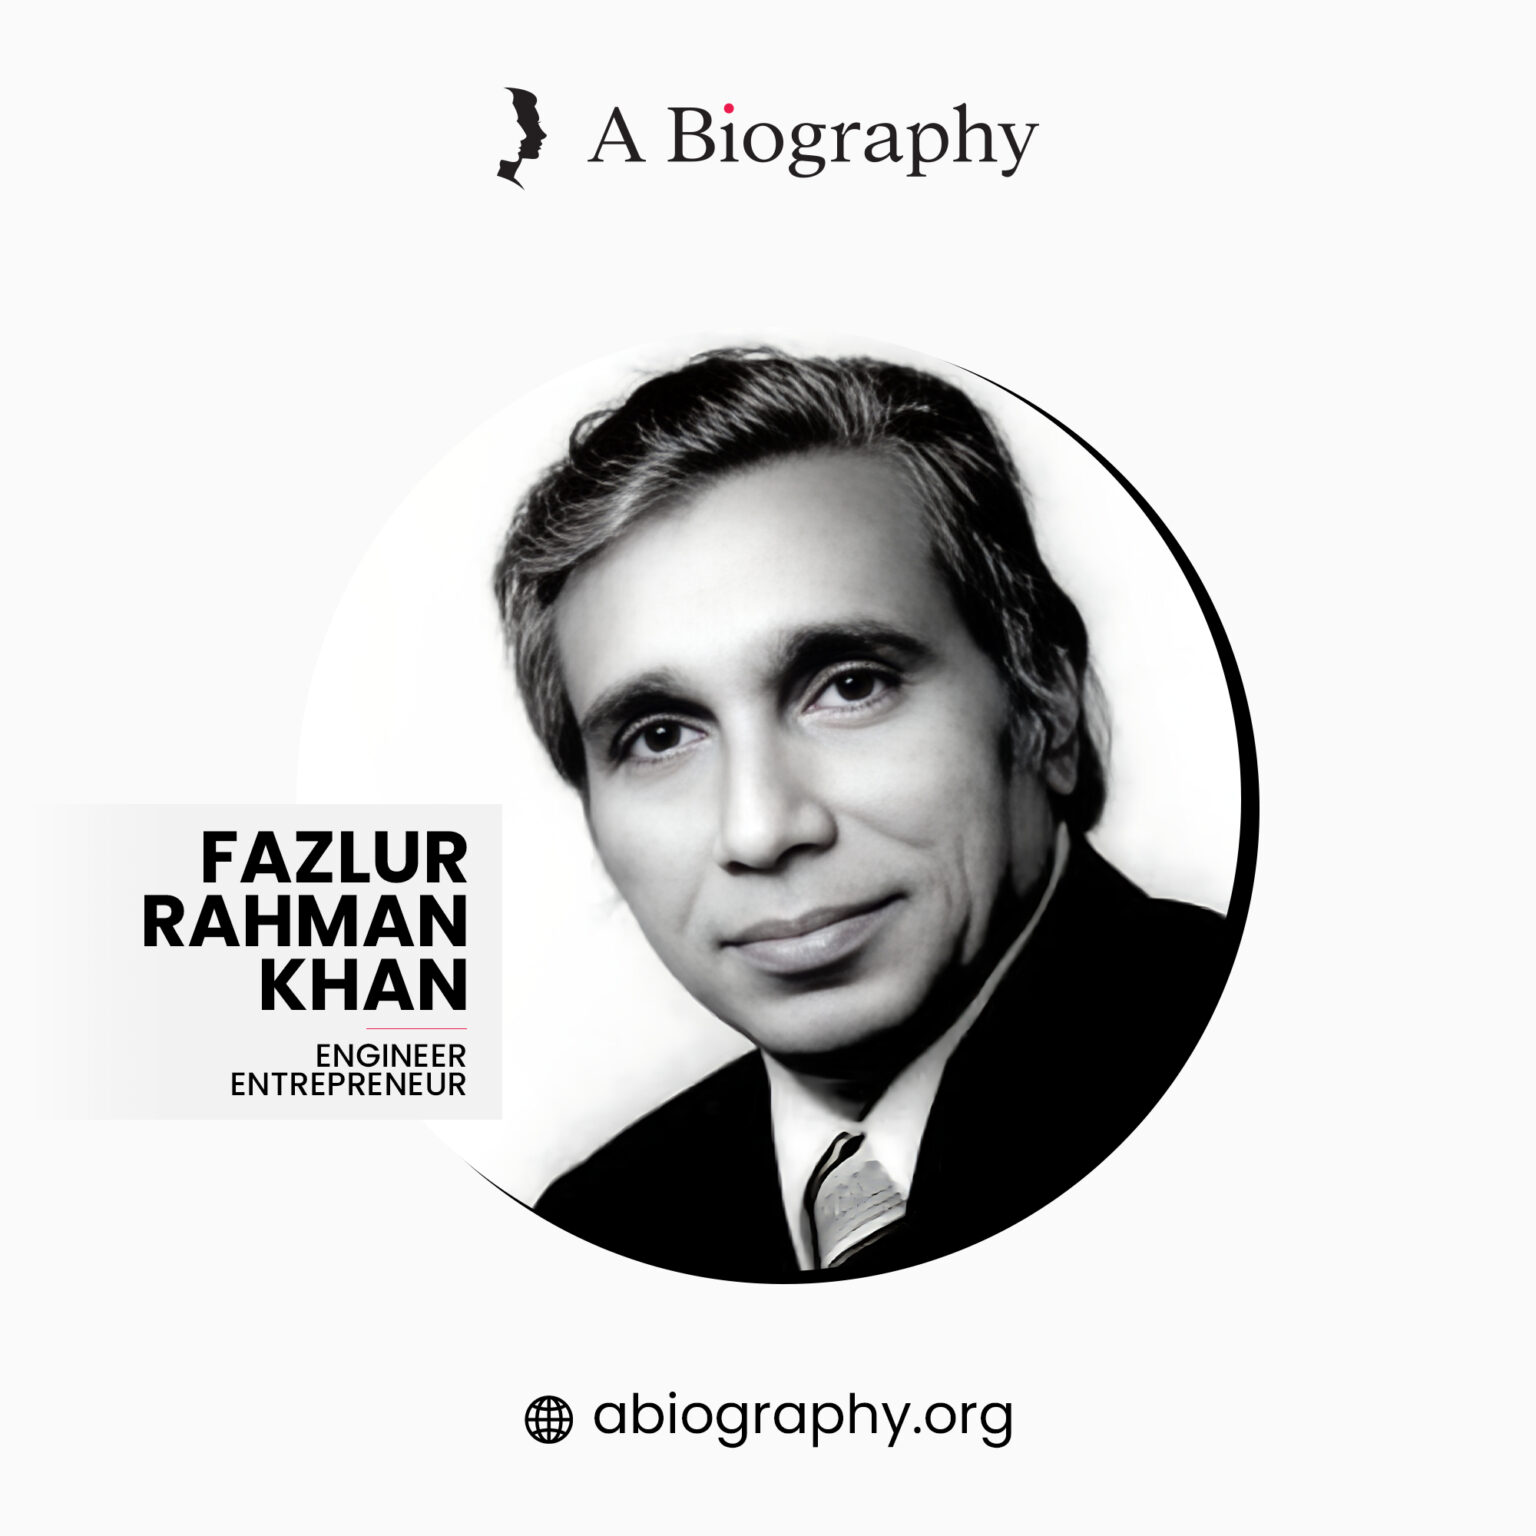 A BIOGRAPHY OF FAZLUR RAHMAN KHAN – ABIOGRAPHY